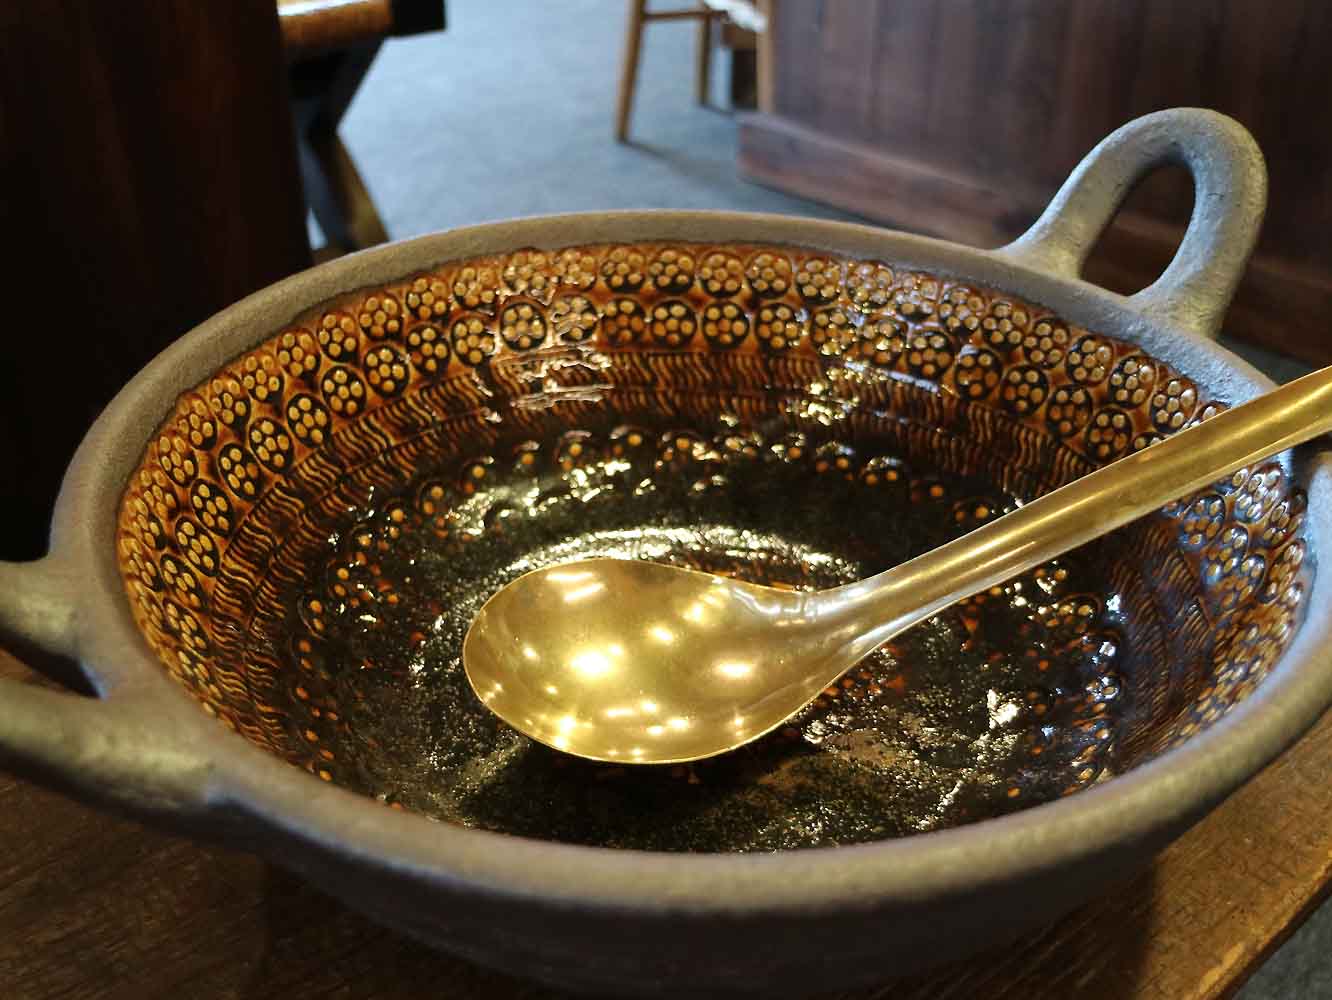 大きな押紋土鍋は、鳥取県「岩井窯」の山本教行さんの作品。真鍮のおたまは岡山県の菊地流架さん作